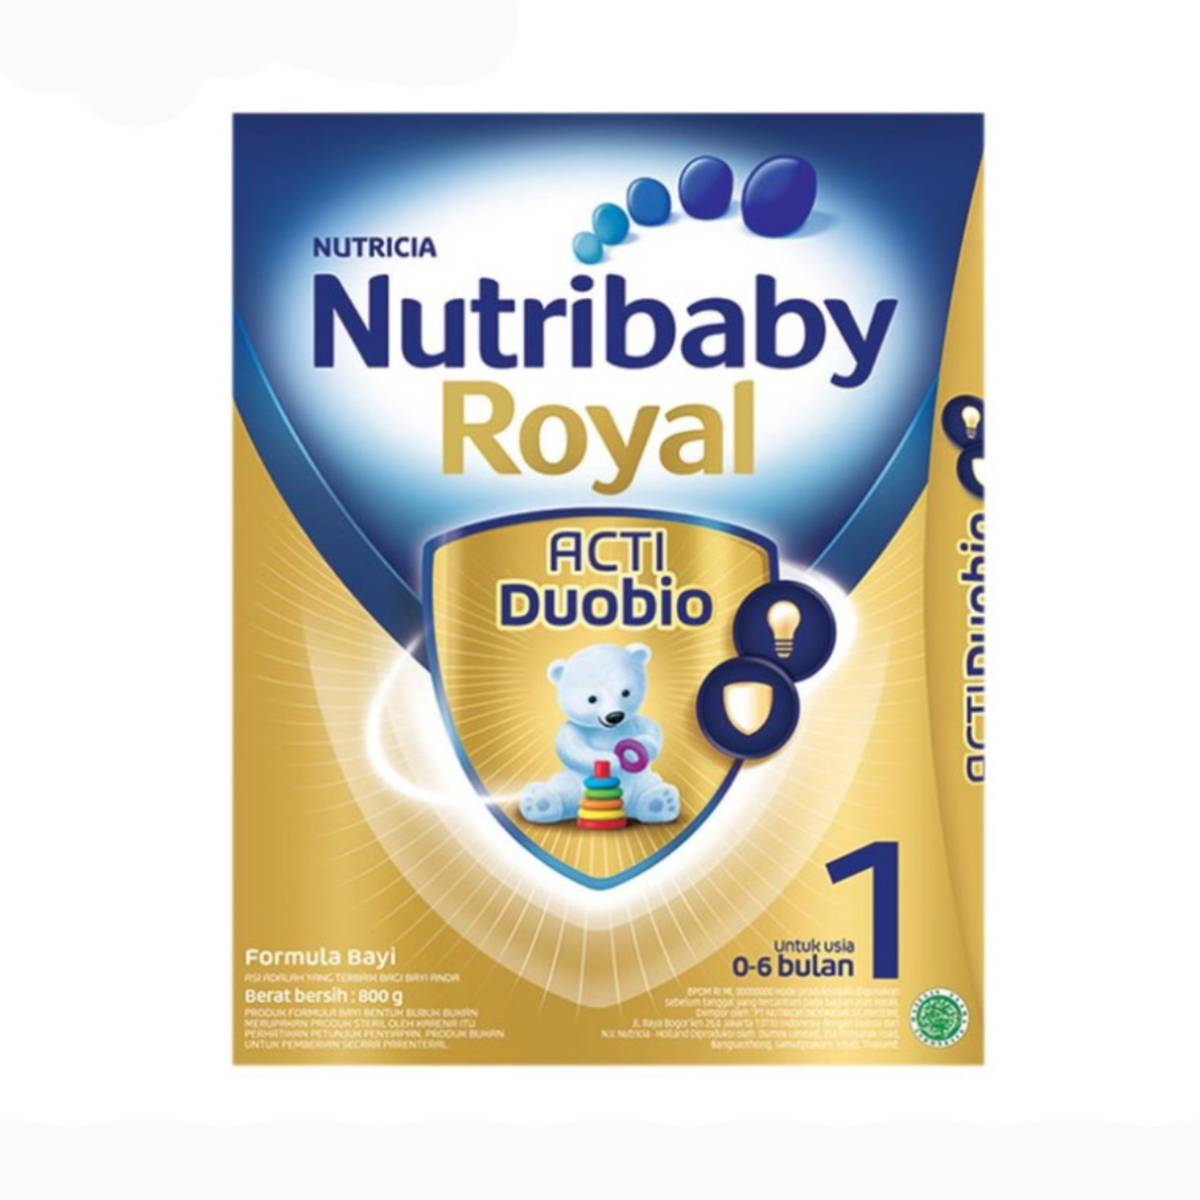 Nutribaby Royal Act Duobio 1 800g